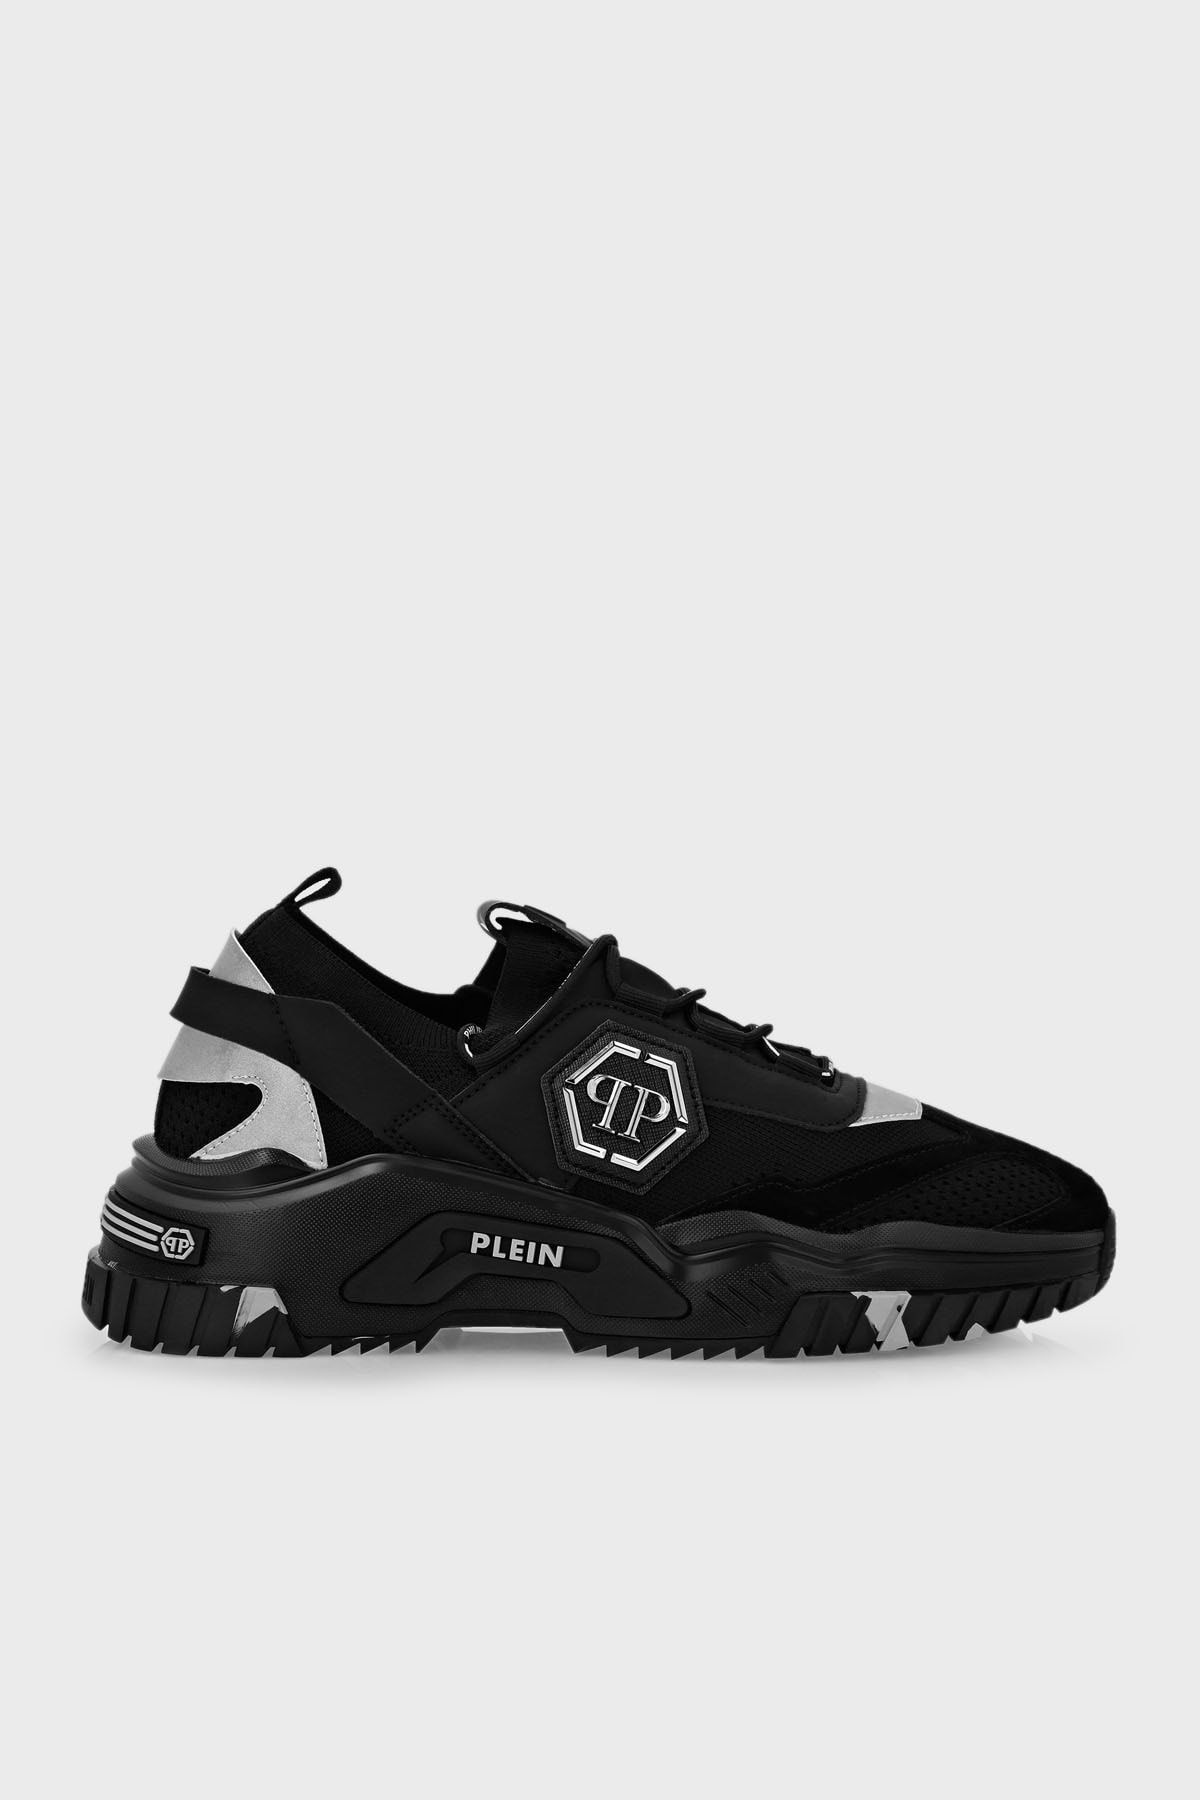 PHILIPP PLEIN Logolu Kalın Tabanlı Sneaker Ayakkabı Erkek Ayakkabı Aaas Usc0096 Pte00 3n02